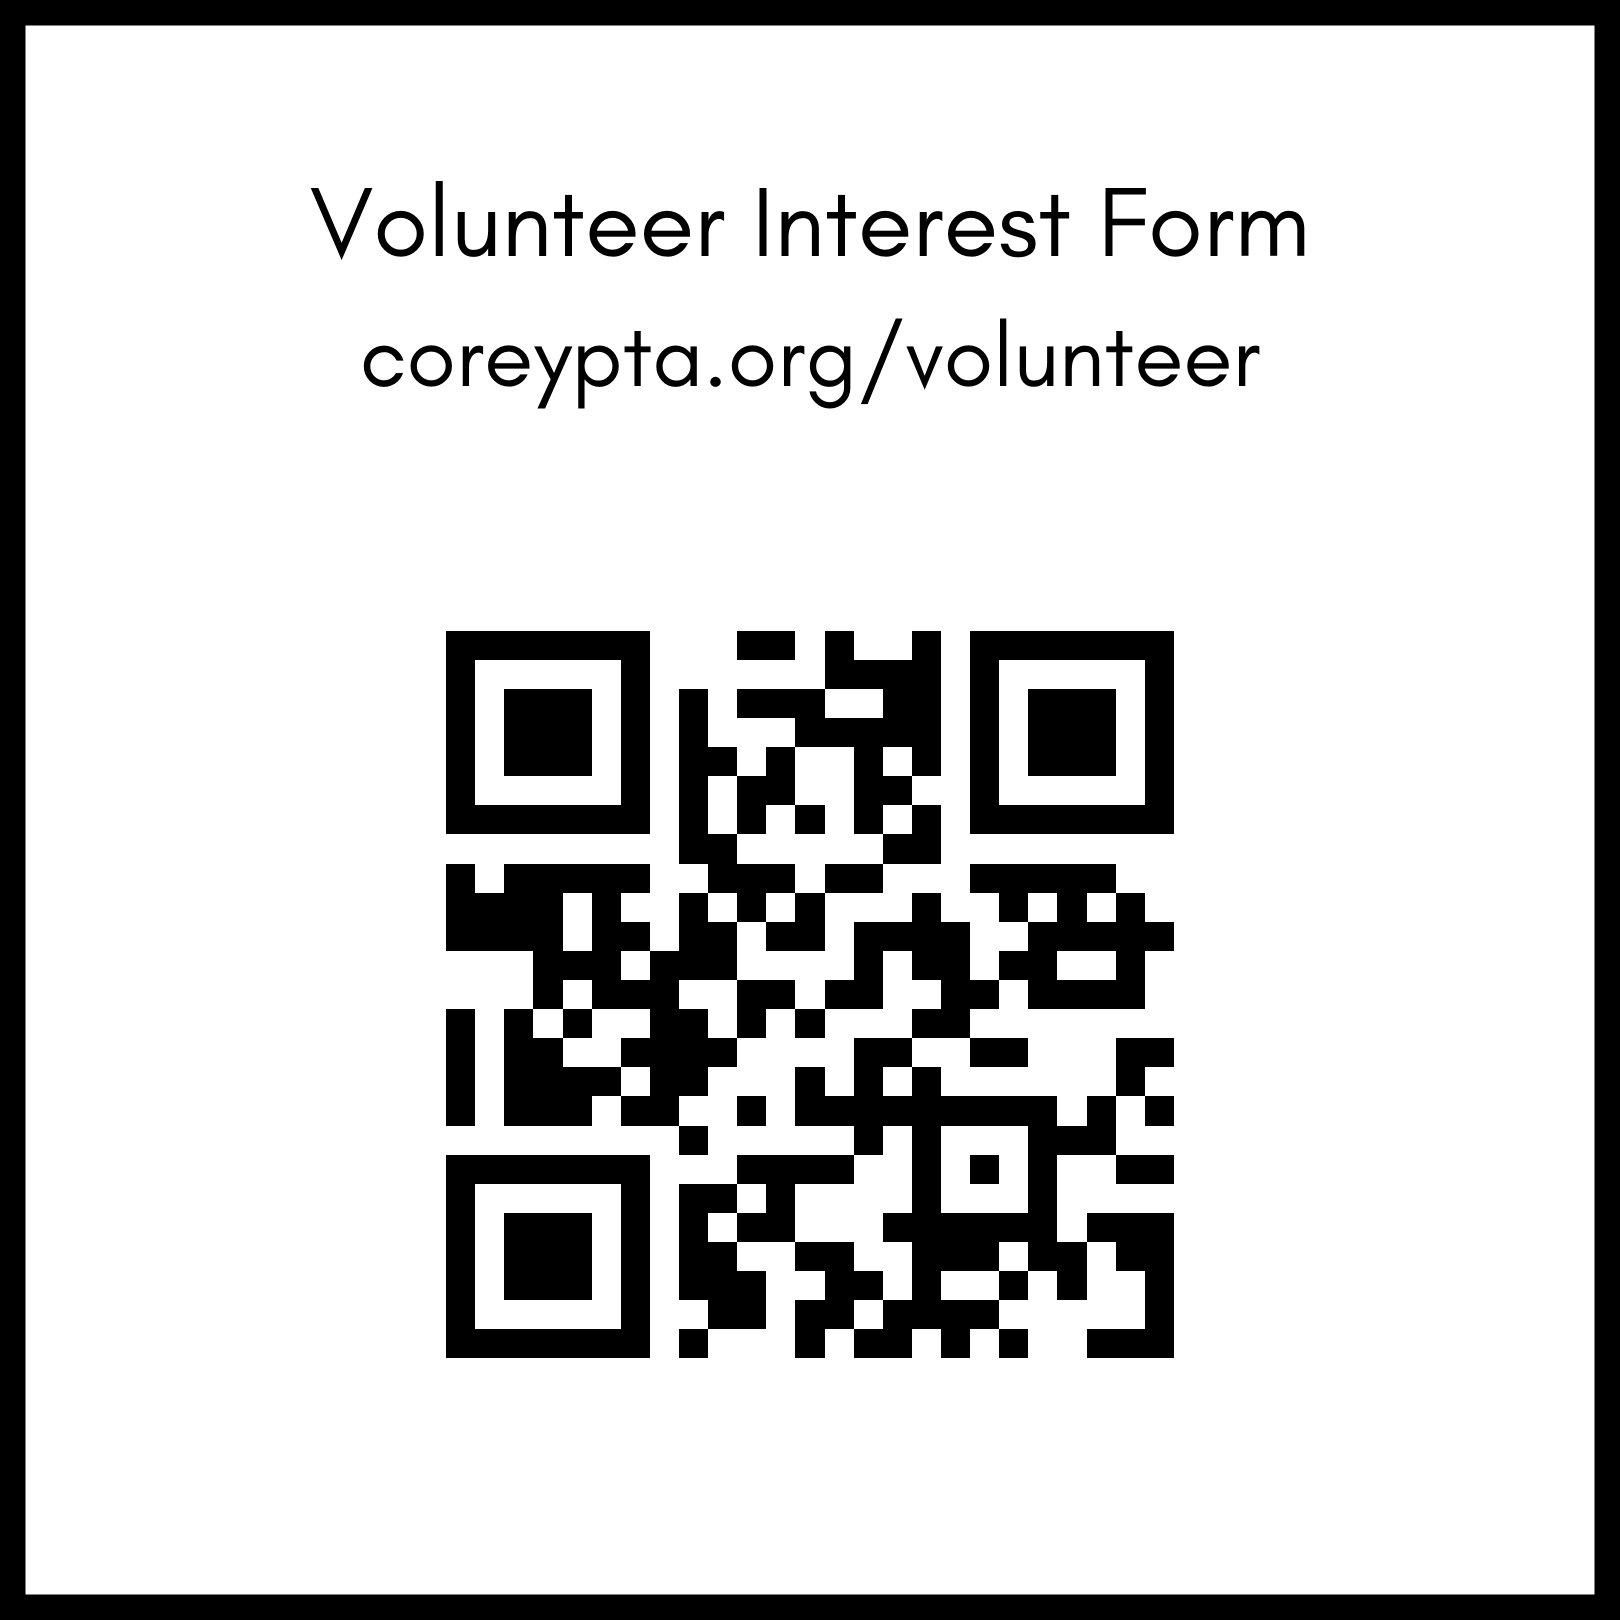 Formulario para
voluntarios interesados